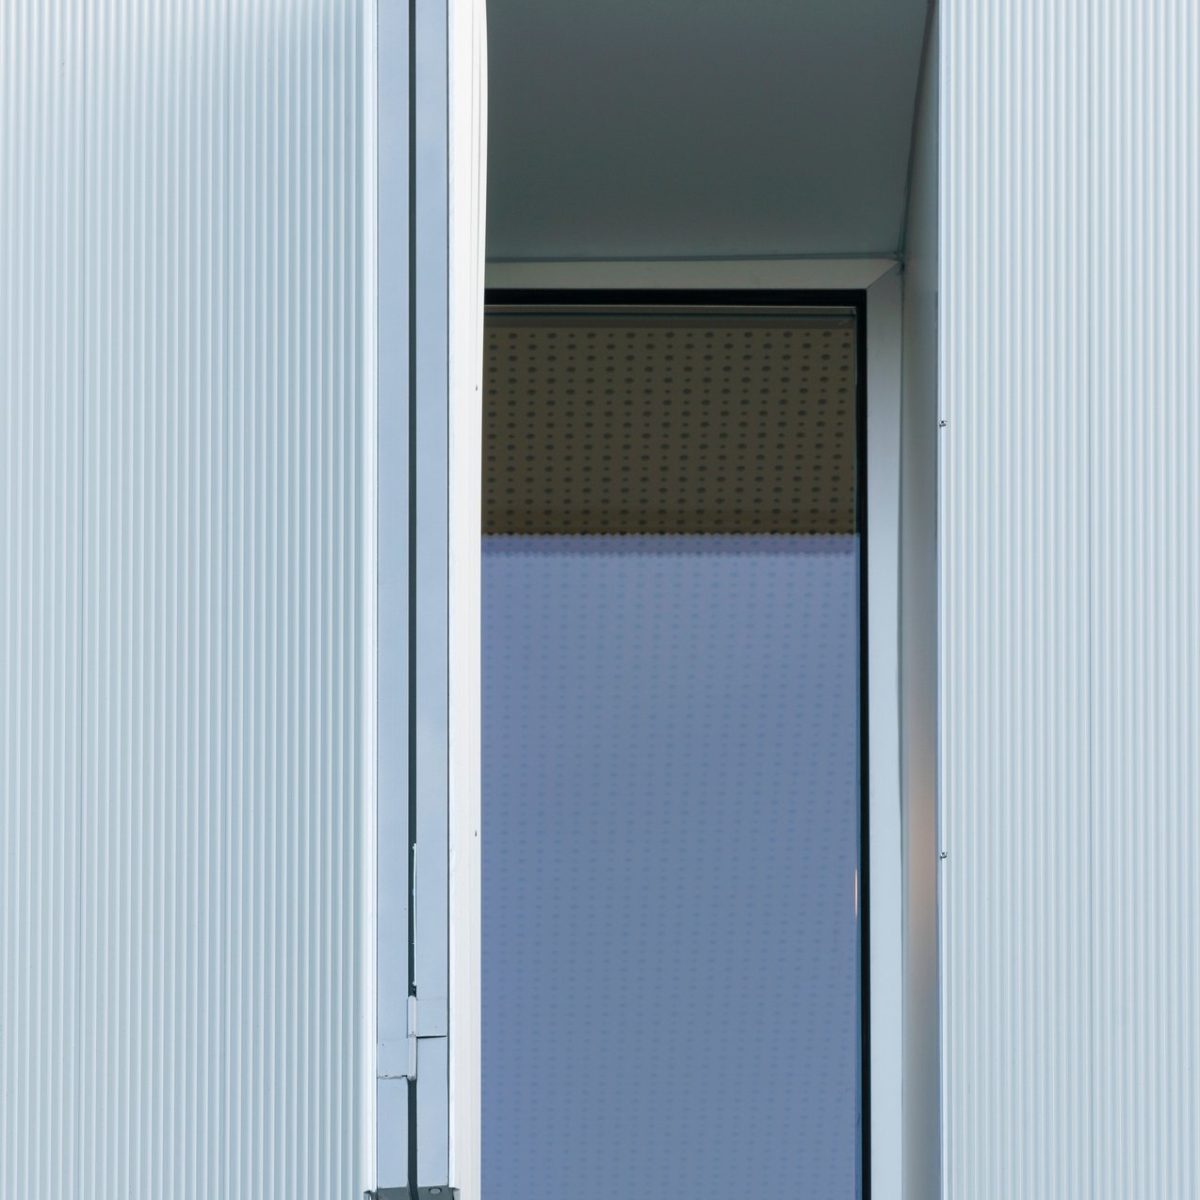 Servicios profesionales de la rehabilitación de fachadas ventiladas en aluminio